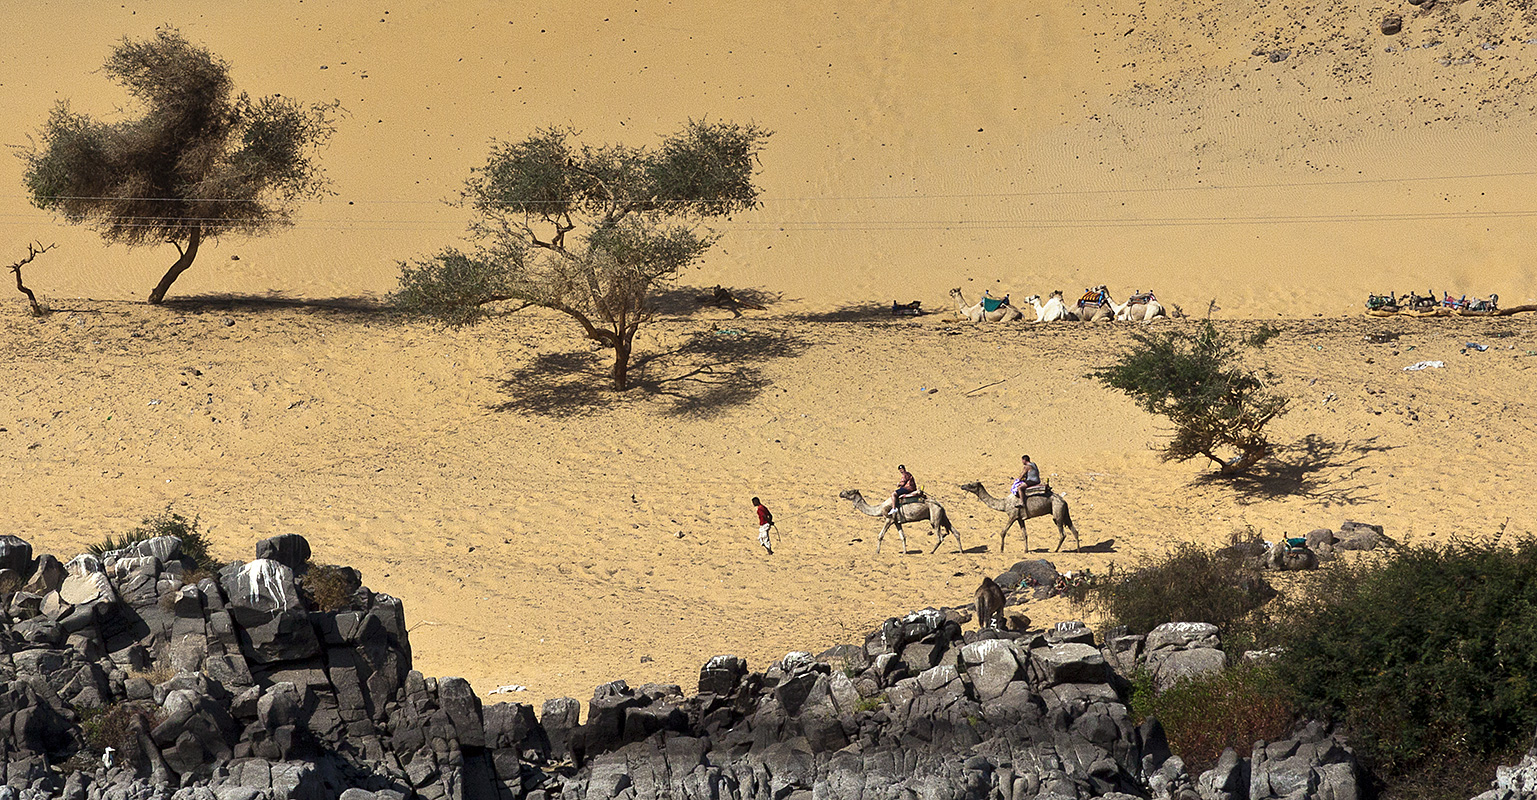 Nubian Villiage :: Camel Caravans